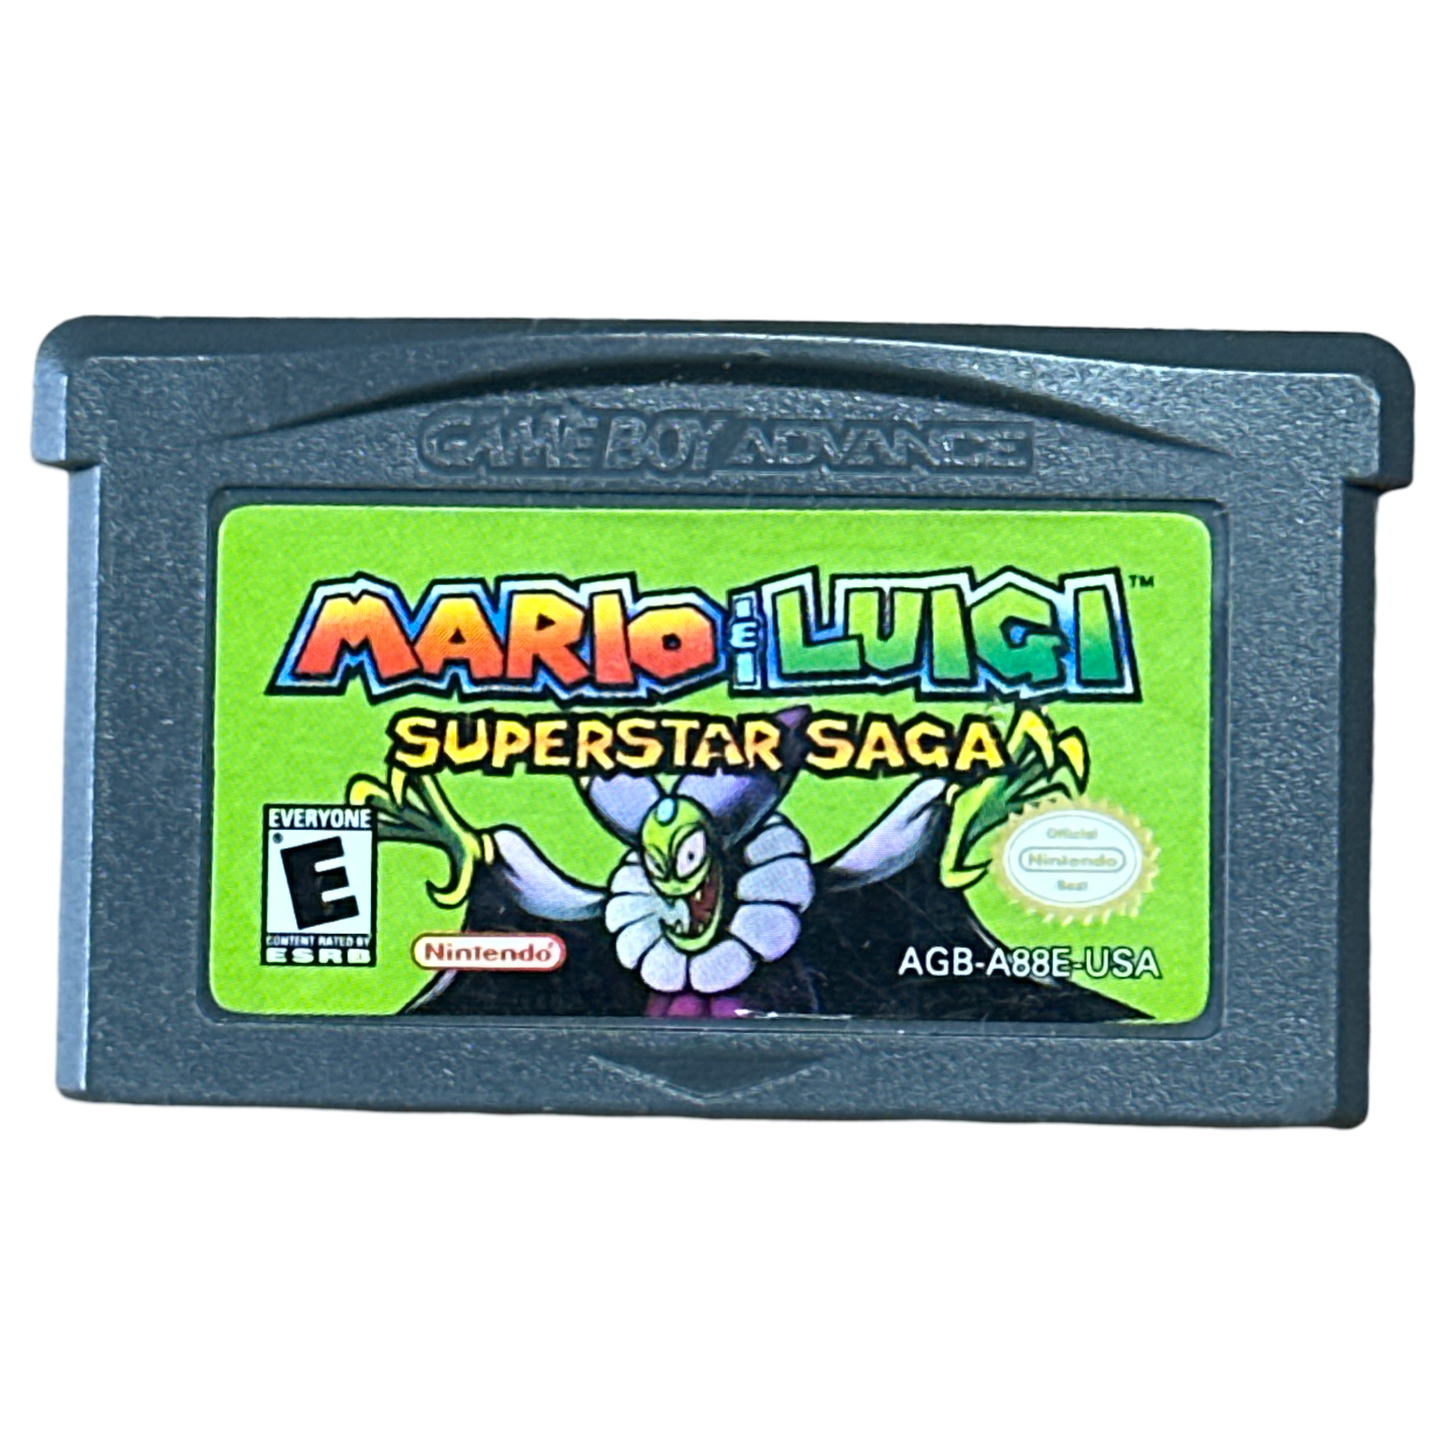 Mario And Luigi Superstar Saga - Nintendo GameBoy Advance